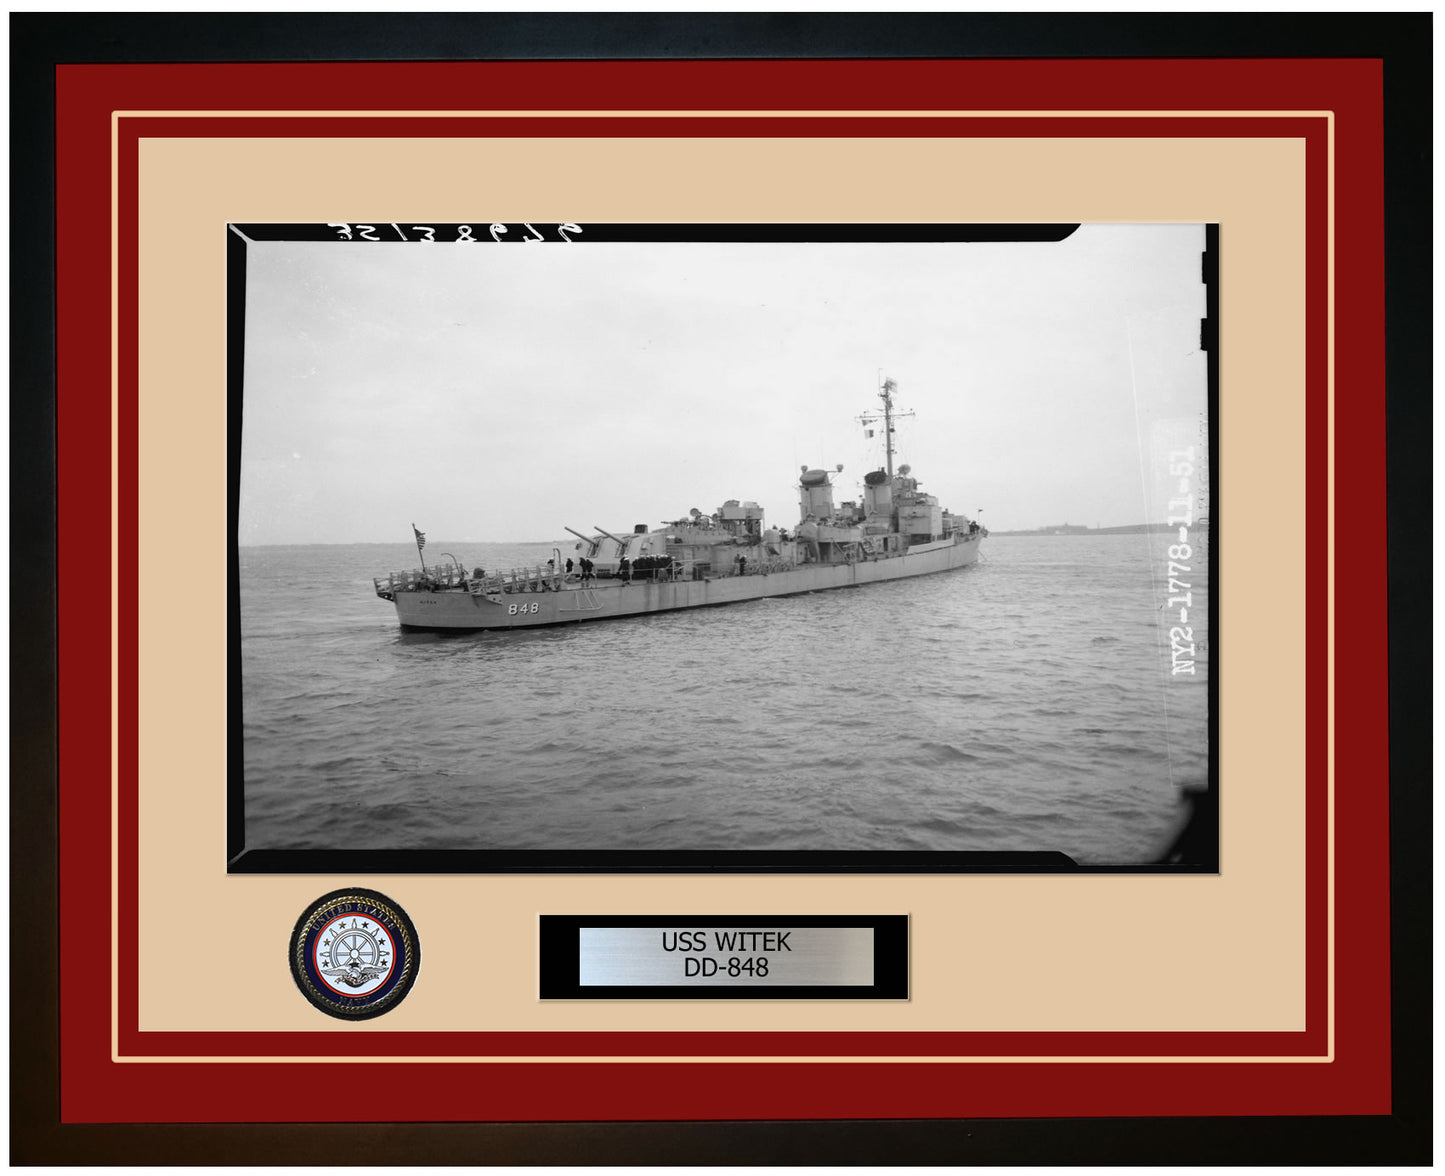 USS WITEK DD-848 Framed Navy Ship Photo Burgundy